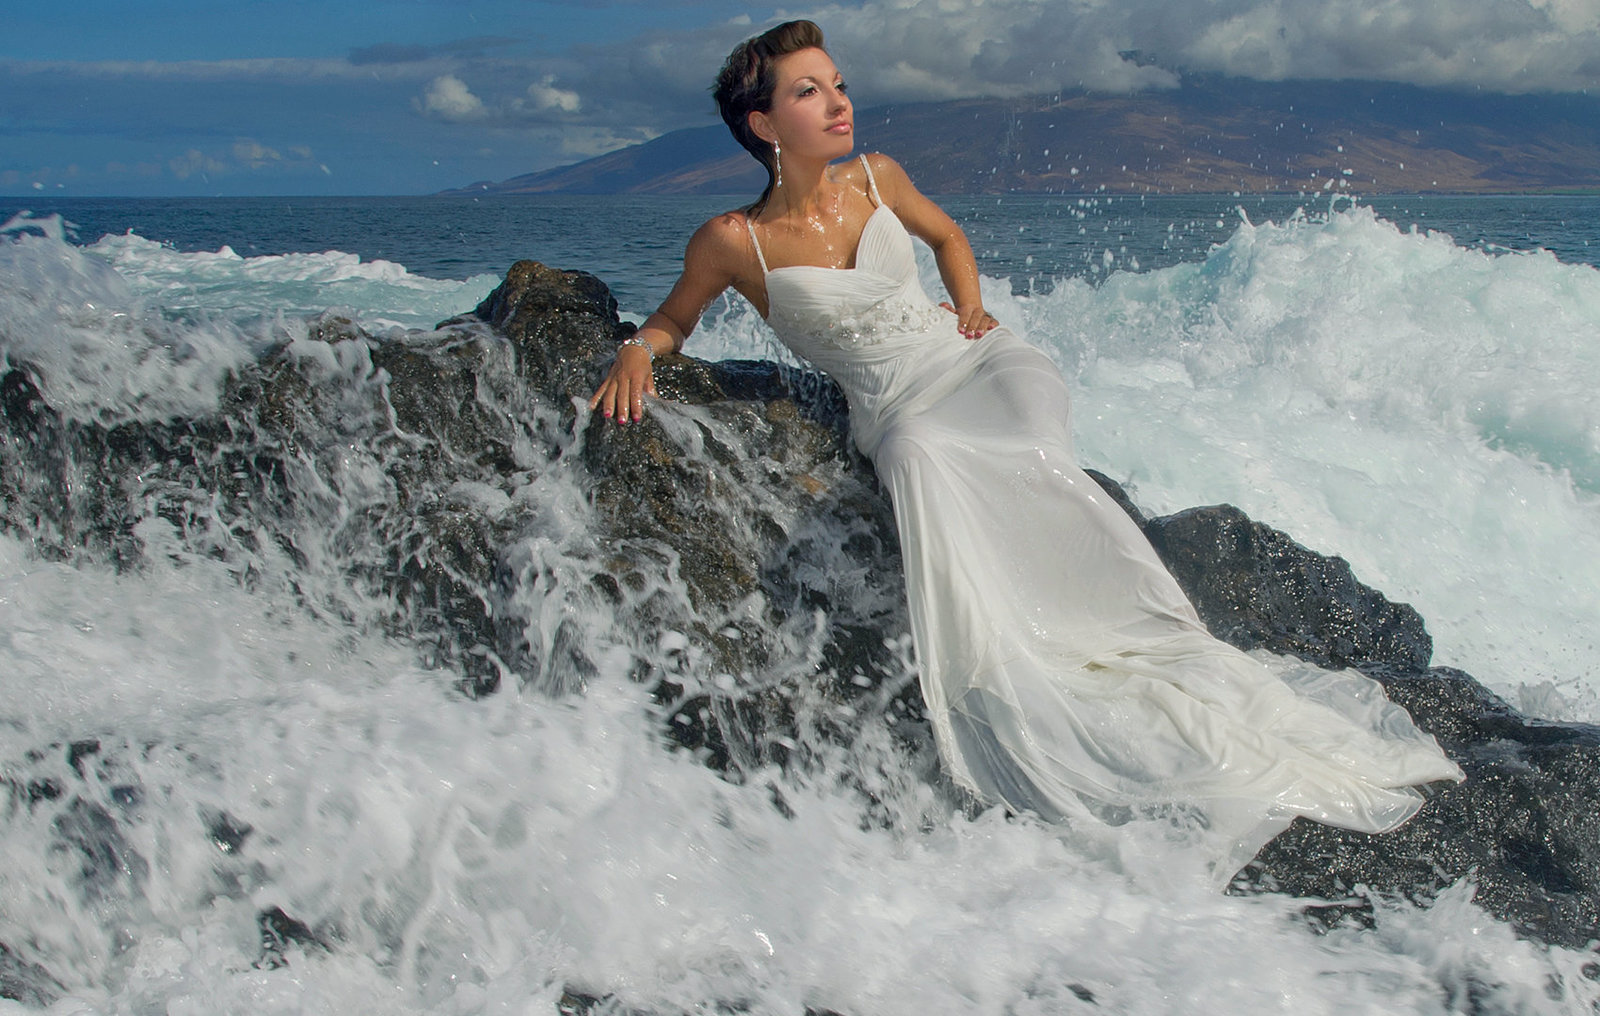 Wailea wedding photographers on Maui | Hawaii